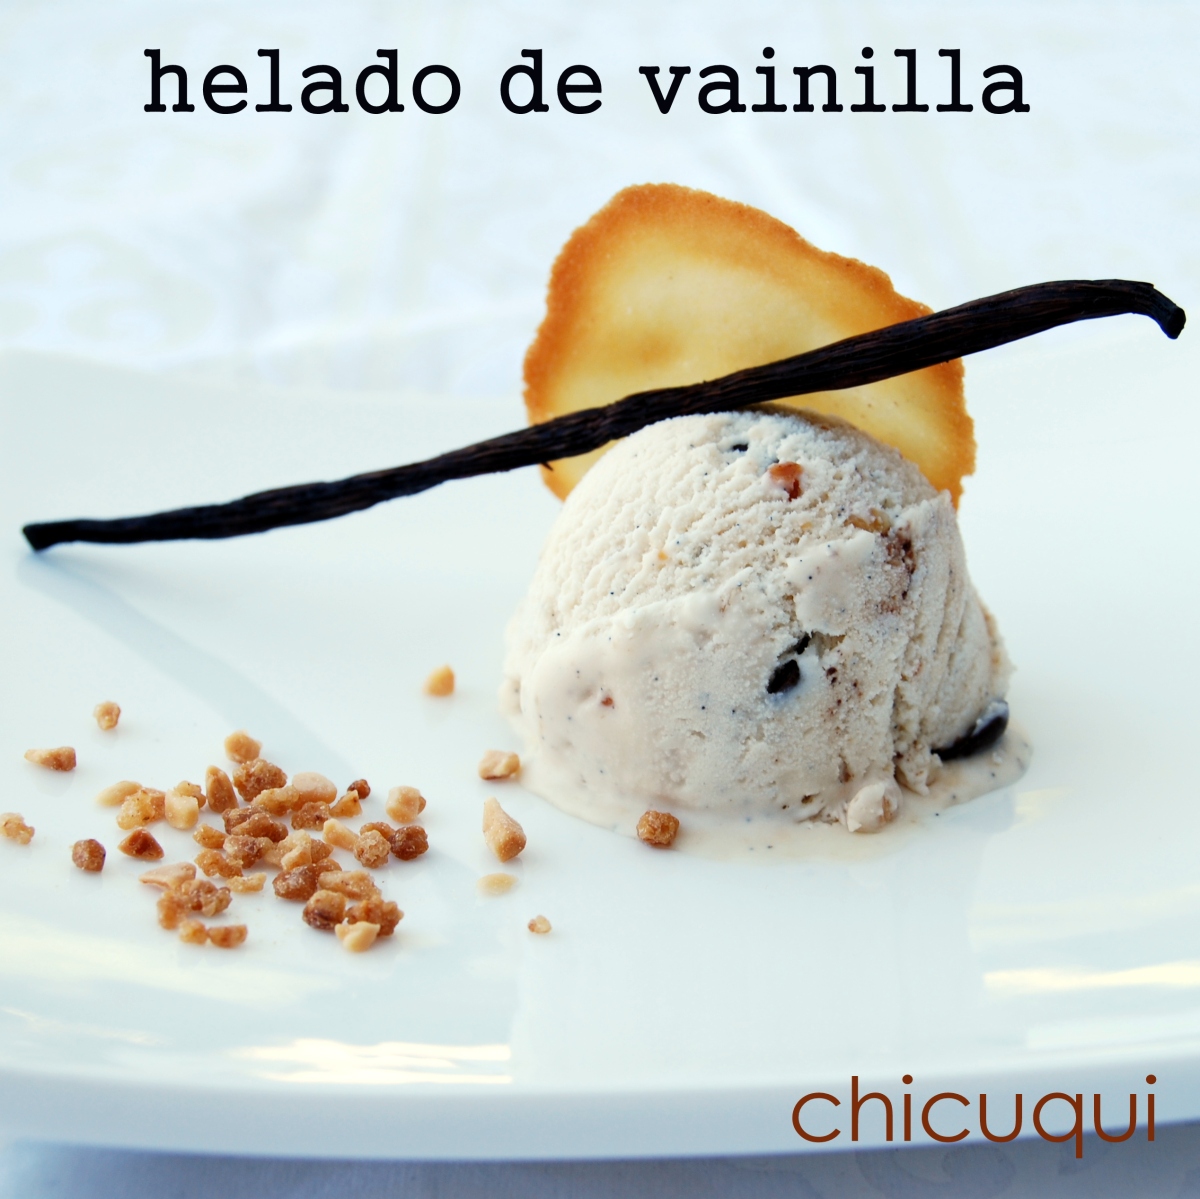 helado de vainilla chicuqui galletas decoradas 03